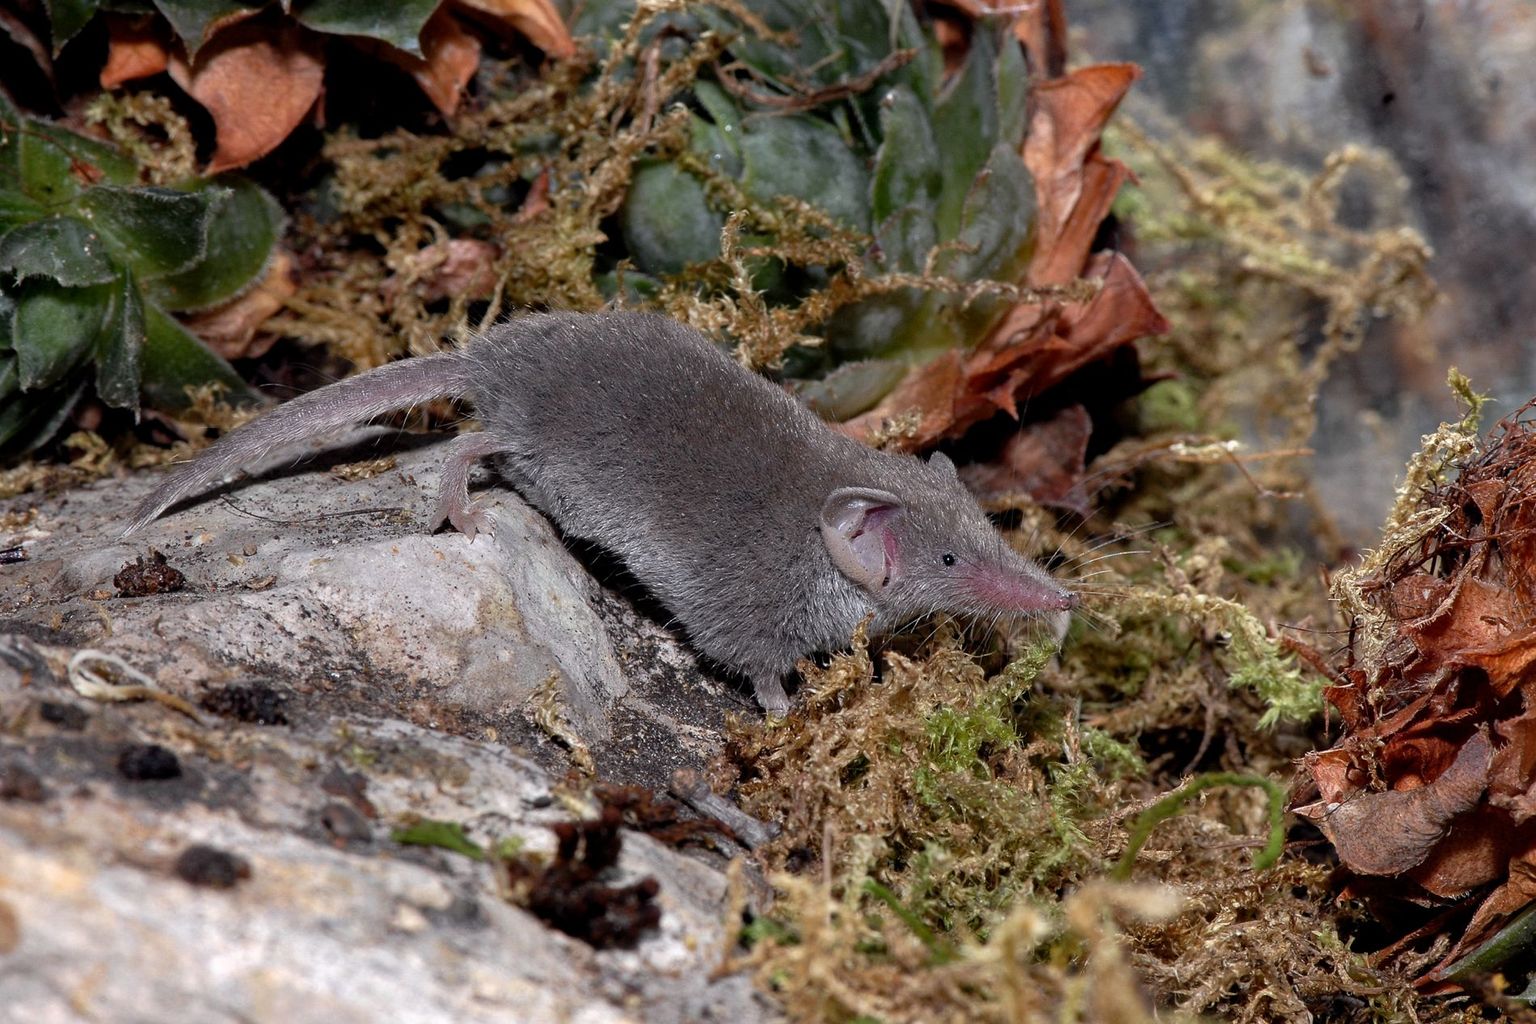 Con una lunghezza testa-corpo di ca. 4.5 cm e un peso di poco più di 2 grammi, il Mustiolo è considerato il più piccolo mammifero del mondo. In Svizzera, la sua distribuzione è limitata alle regioni più meridionali del Ticino.